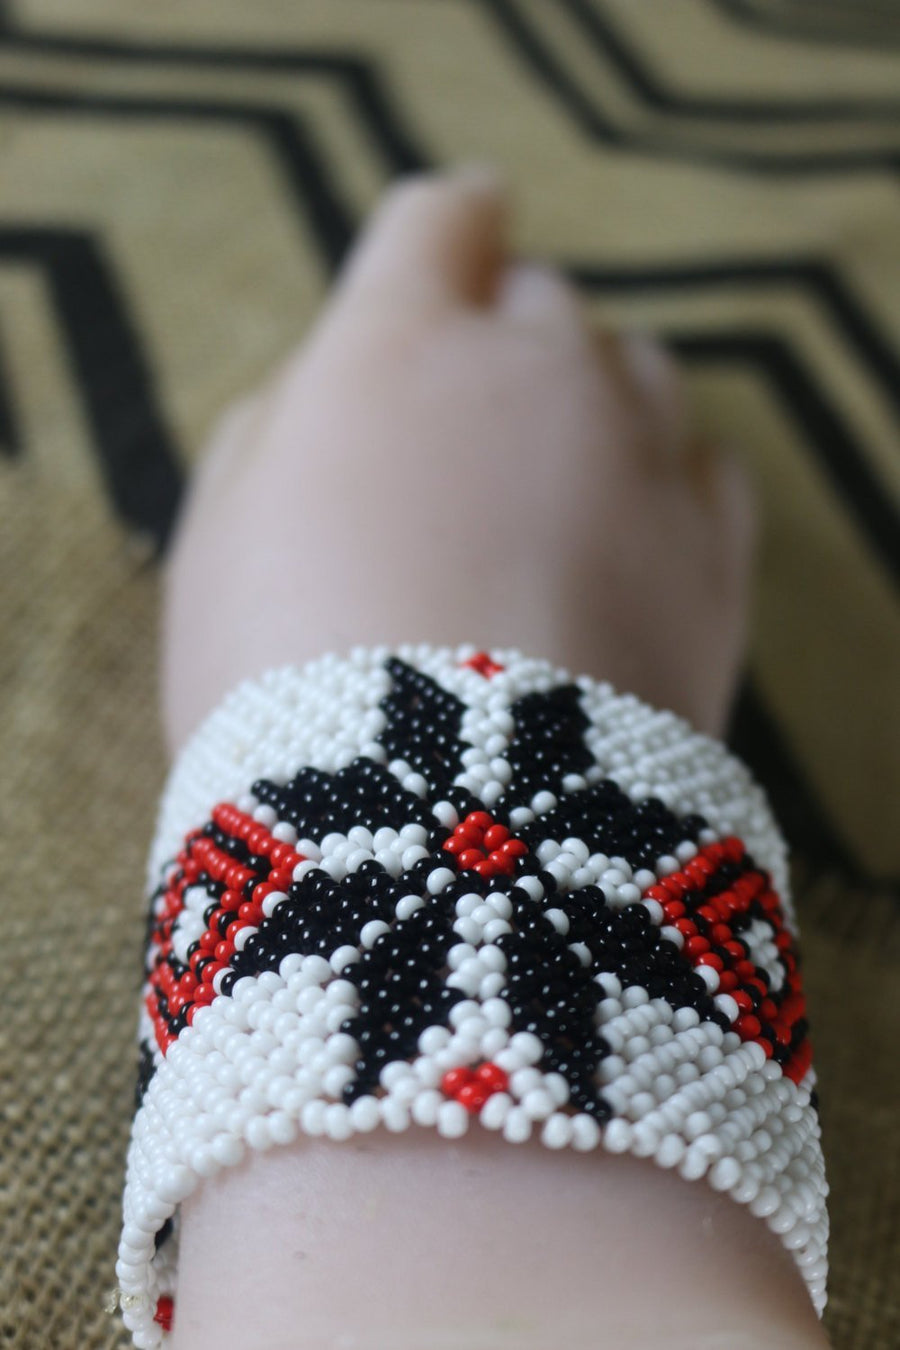 Art# K69  4+ inch Original Kayapo Traditional Peyote stitch Beaded Bracelet from Brazil.